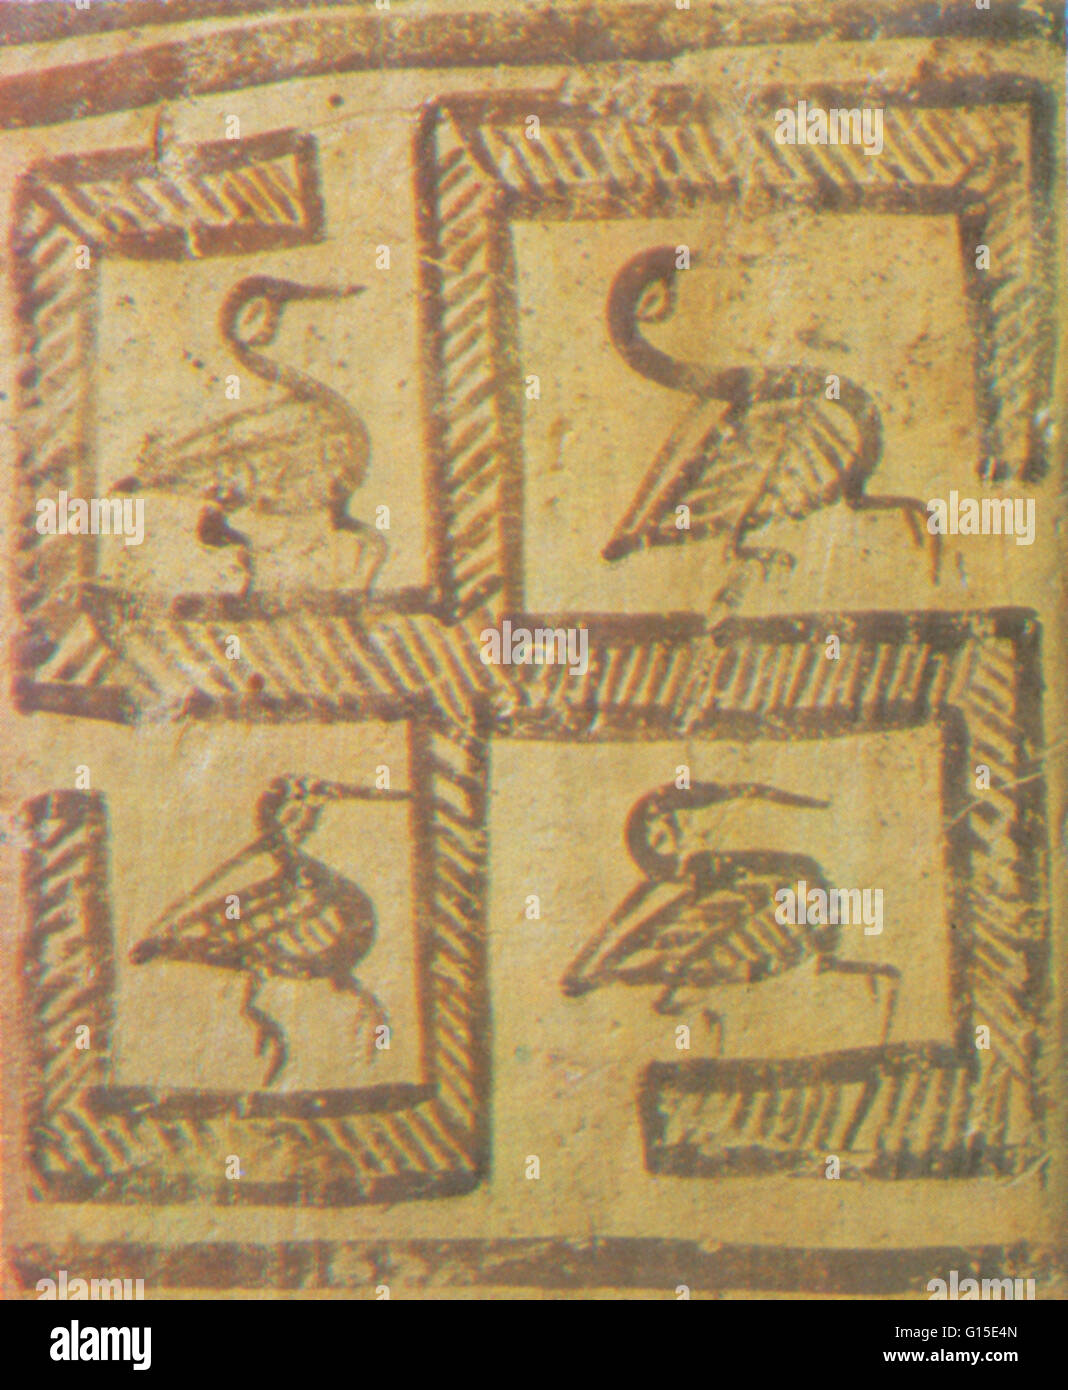 Das Hakenkreuz wurde als Dekoration oder mystischen Zeichen in vielen Teilen der Welt eingesetzt. Hakenkreuz in einem Topf bei Argos in Griechenland, c. 8. Jahrhundert v. Chr. gefunden. Stockfoto